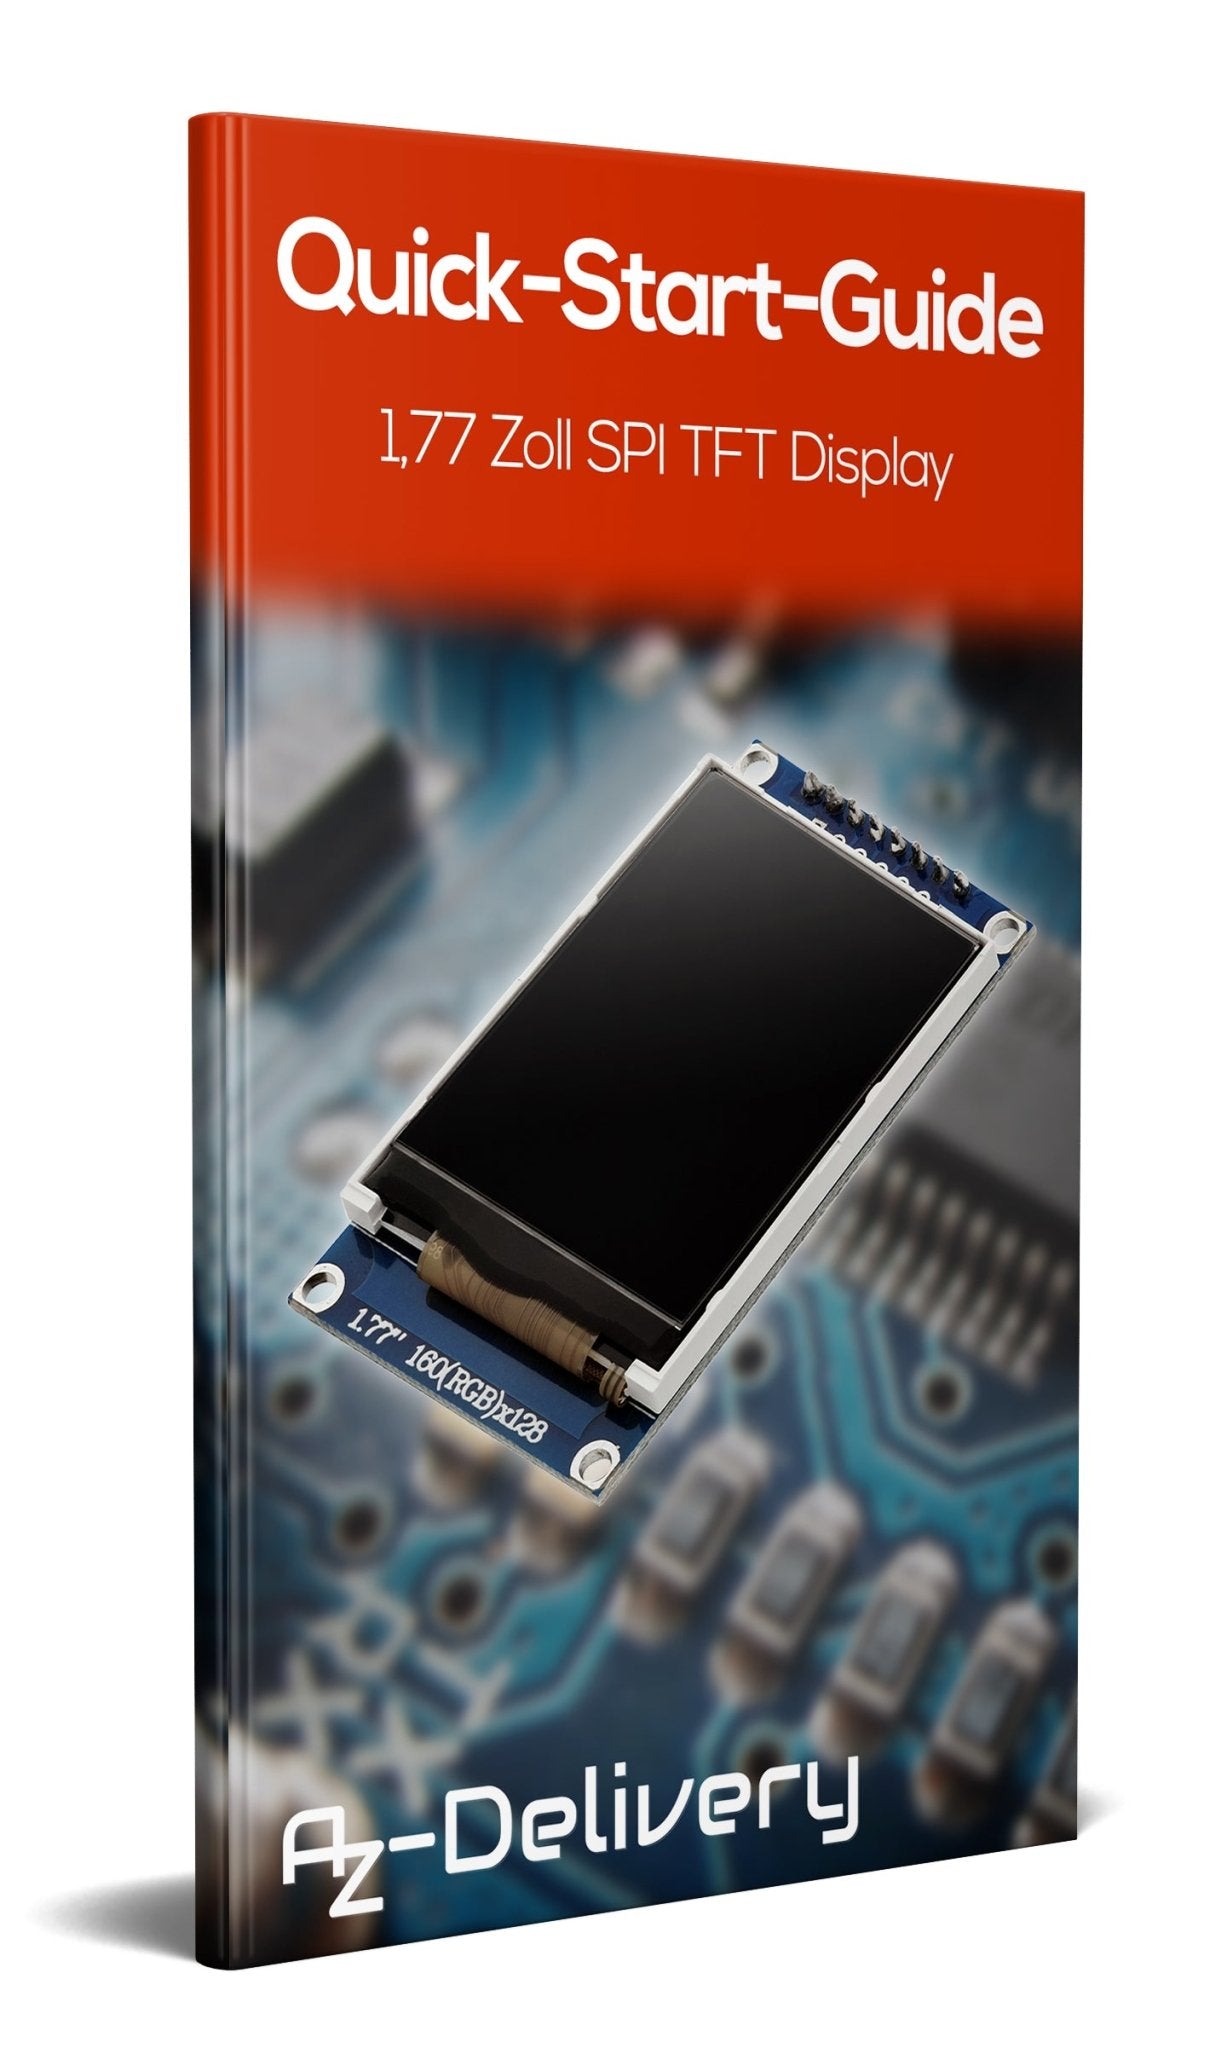 1,77 Zoll SPI TFT-Display und 128x160 Pixeln